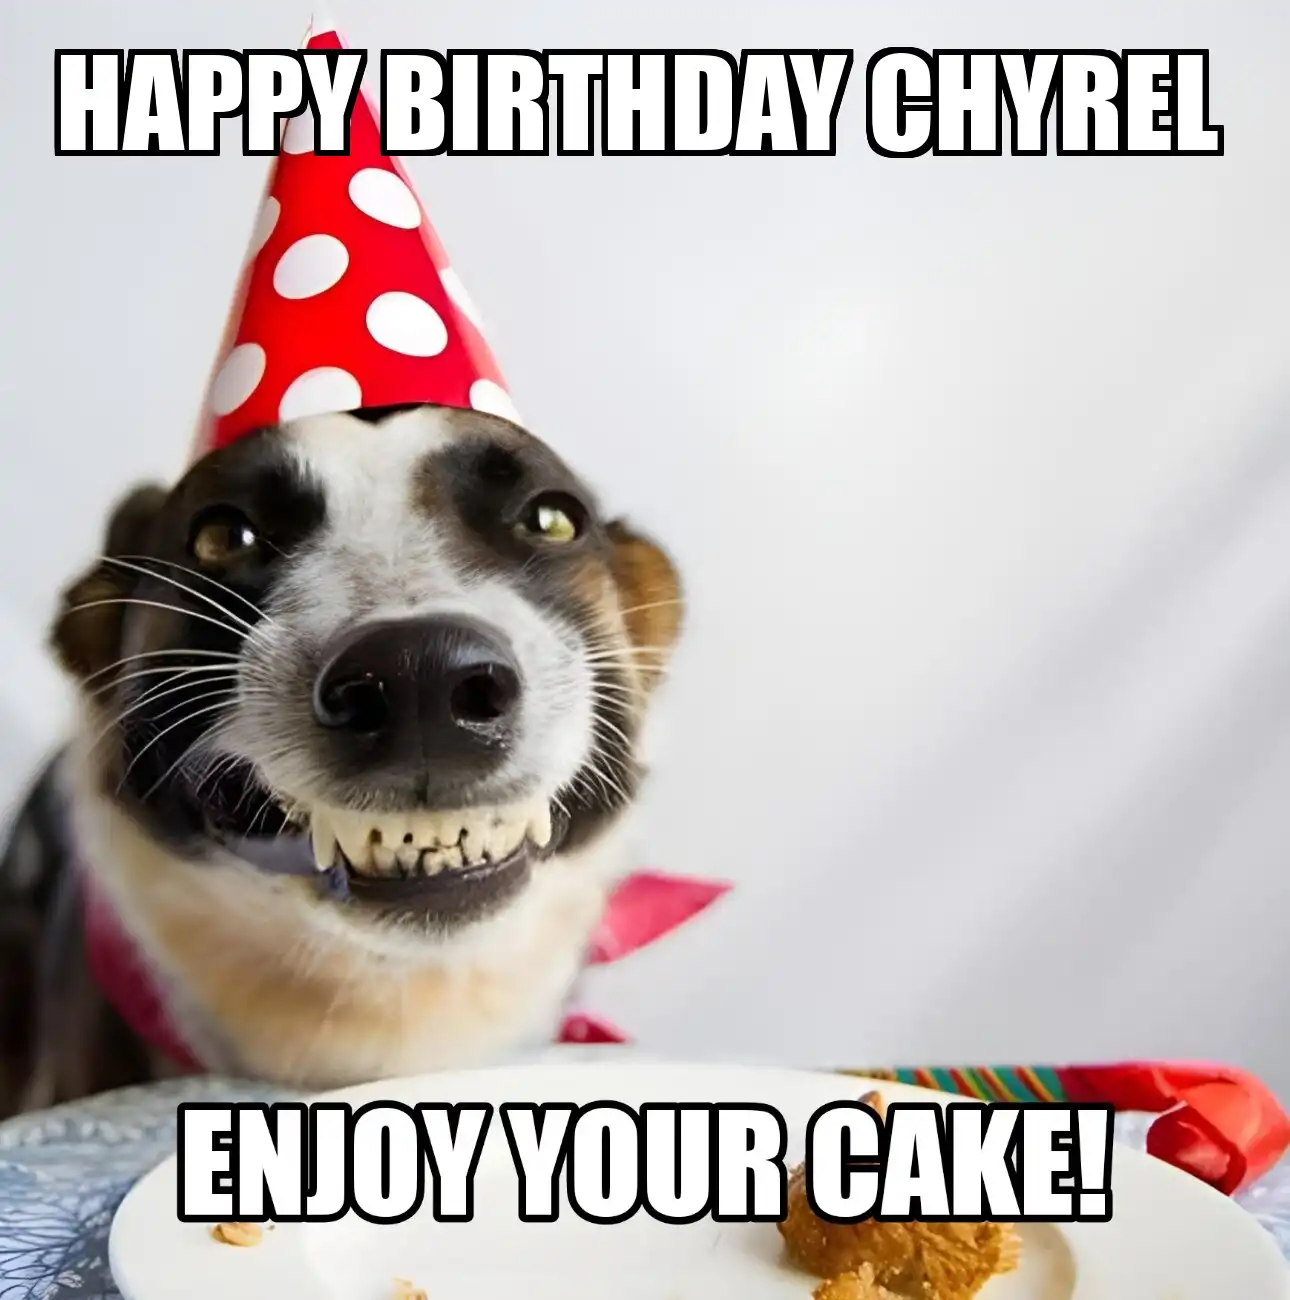 Happy Birthday Chyrel Enjoy Your Cake Dog Meme